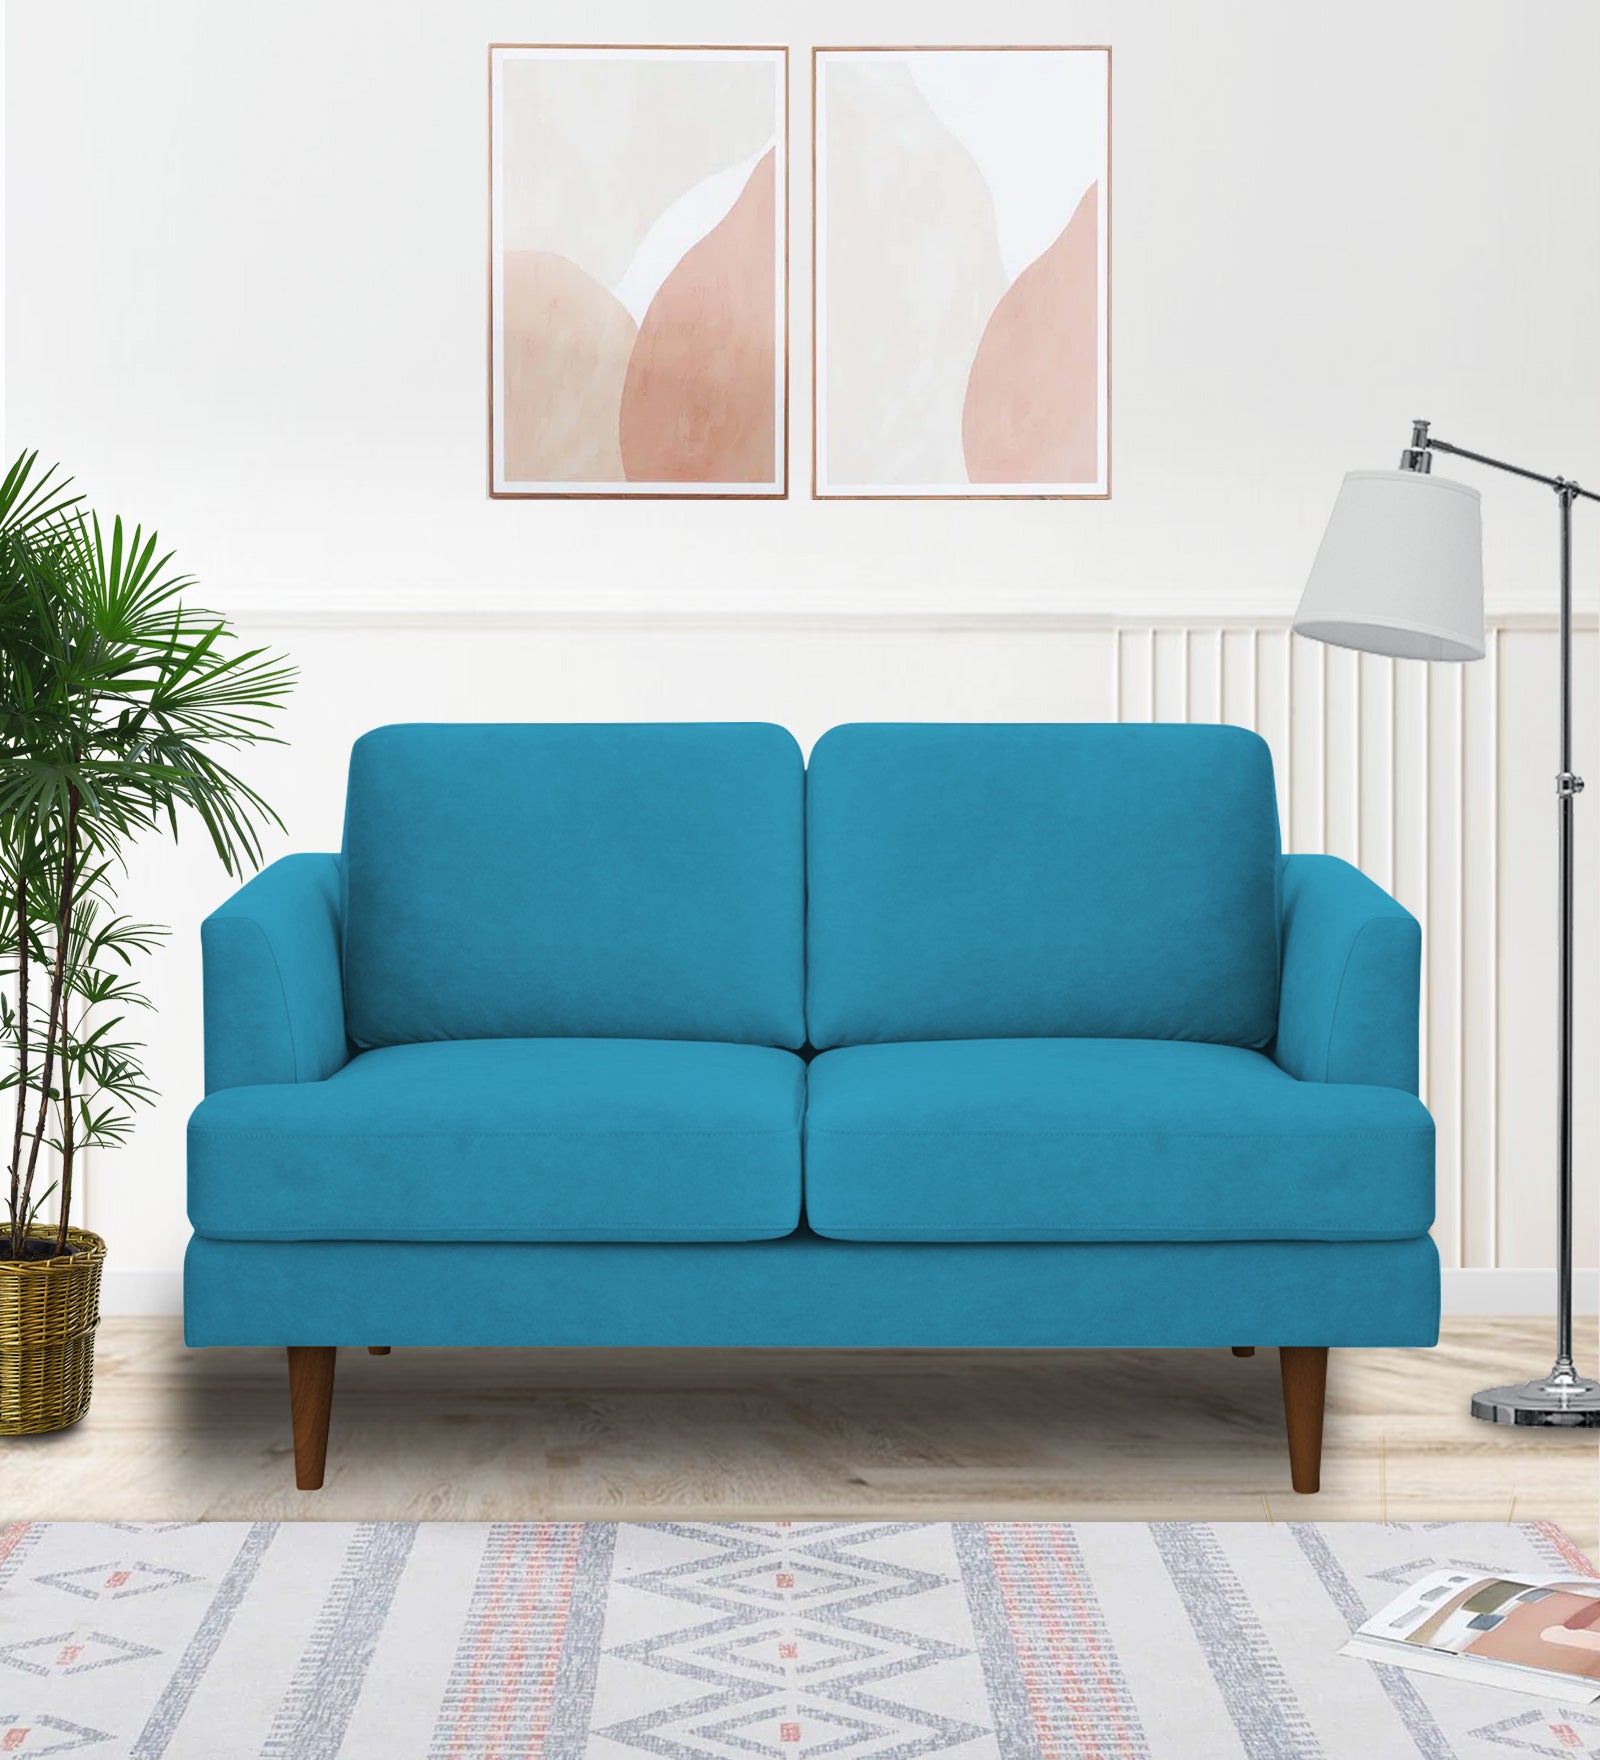 Motra Velvet 2 Seater Sofa in Aqua blue Colour